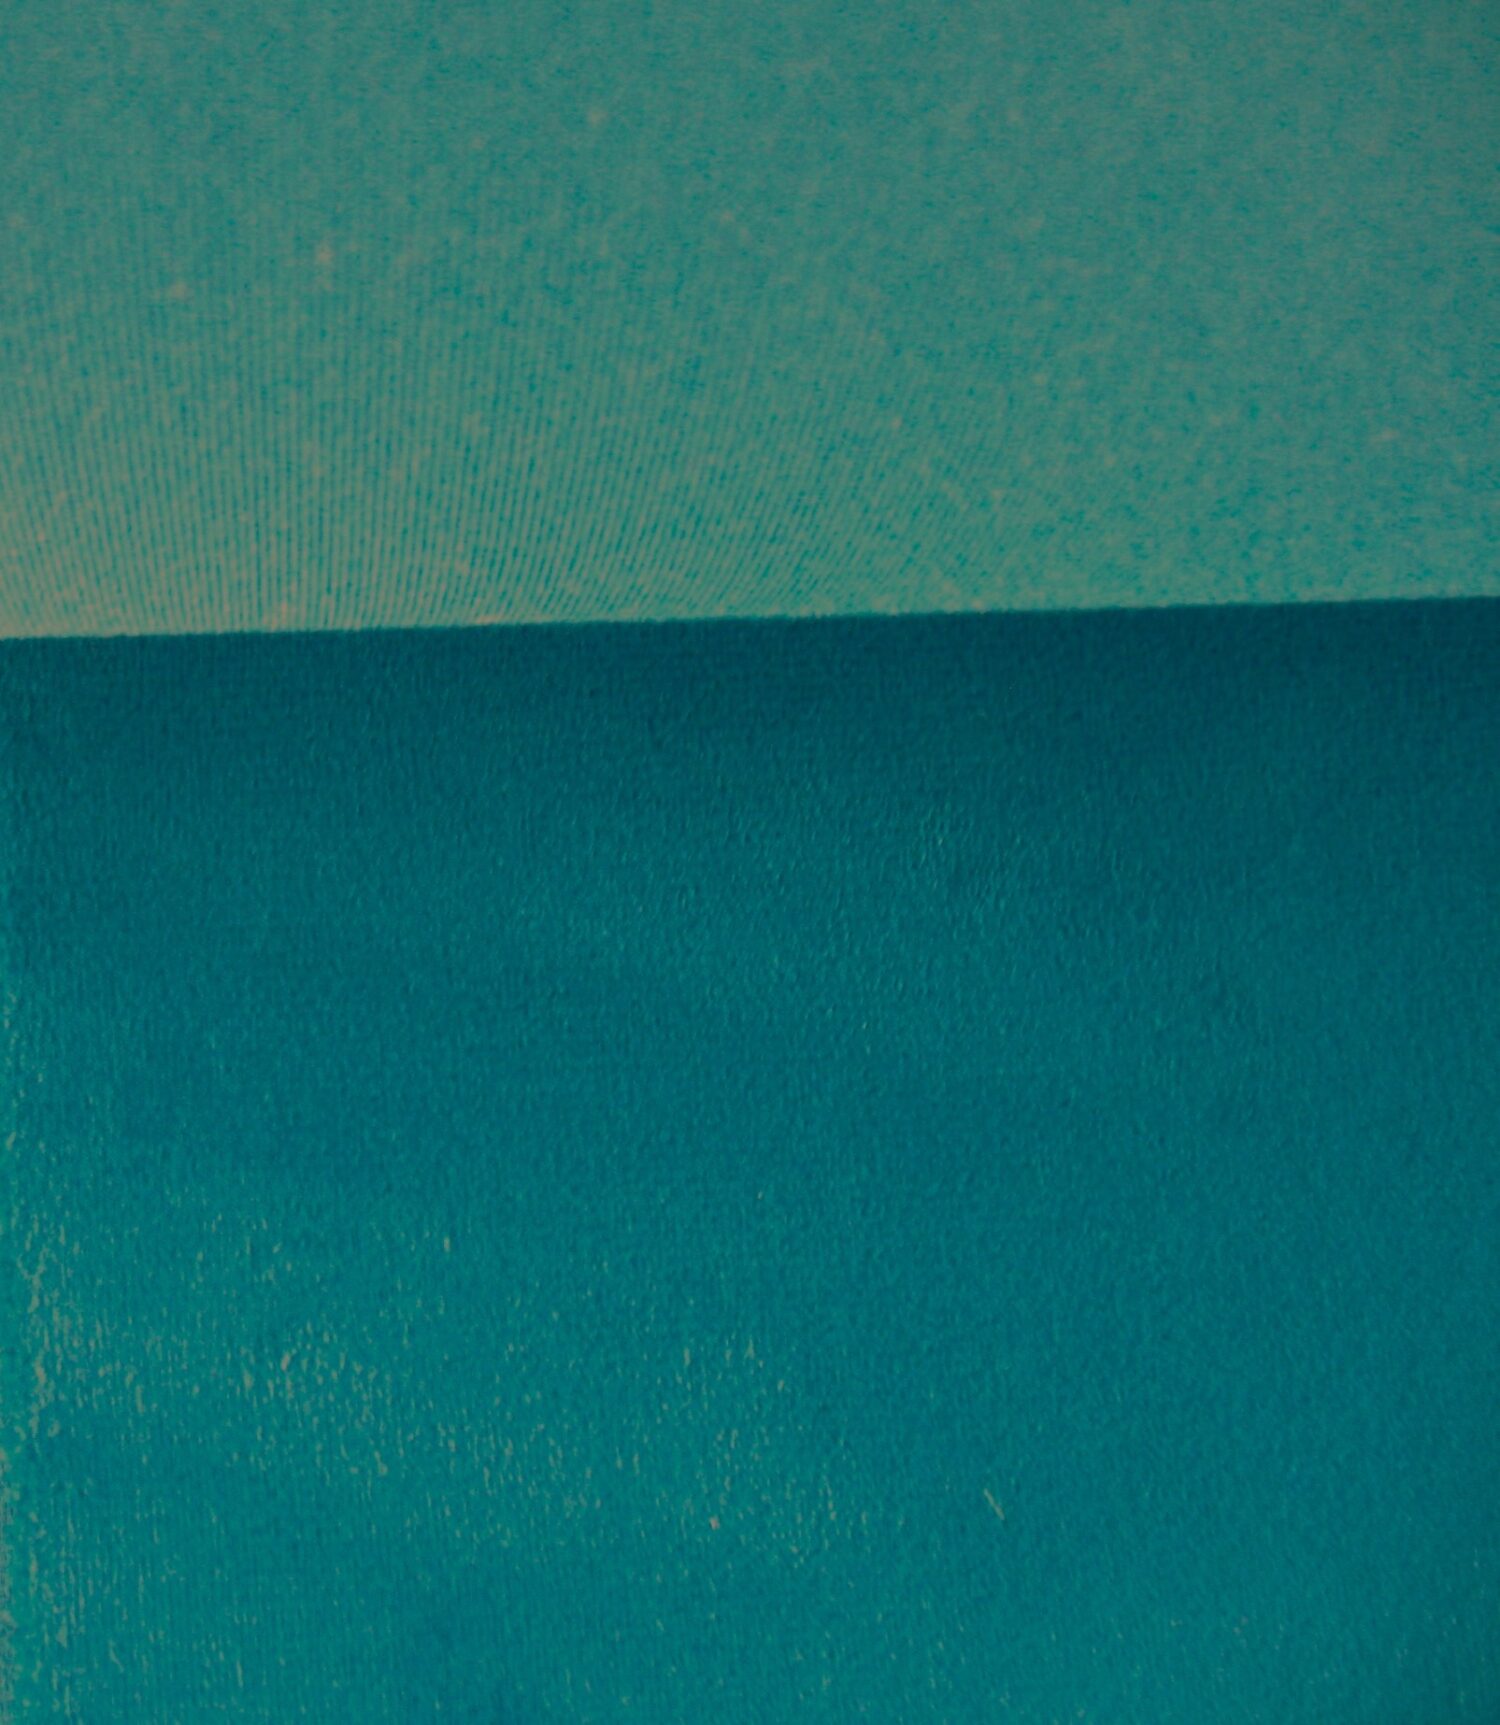 Vescom Ponza velours 702723 blauw turquoise